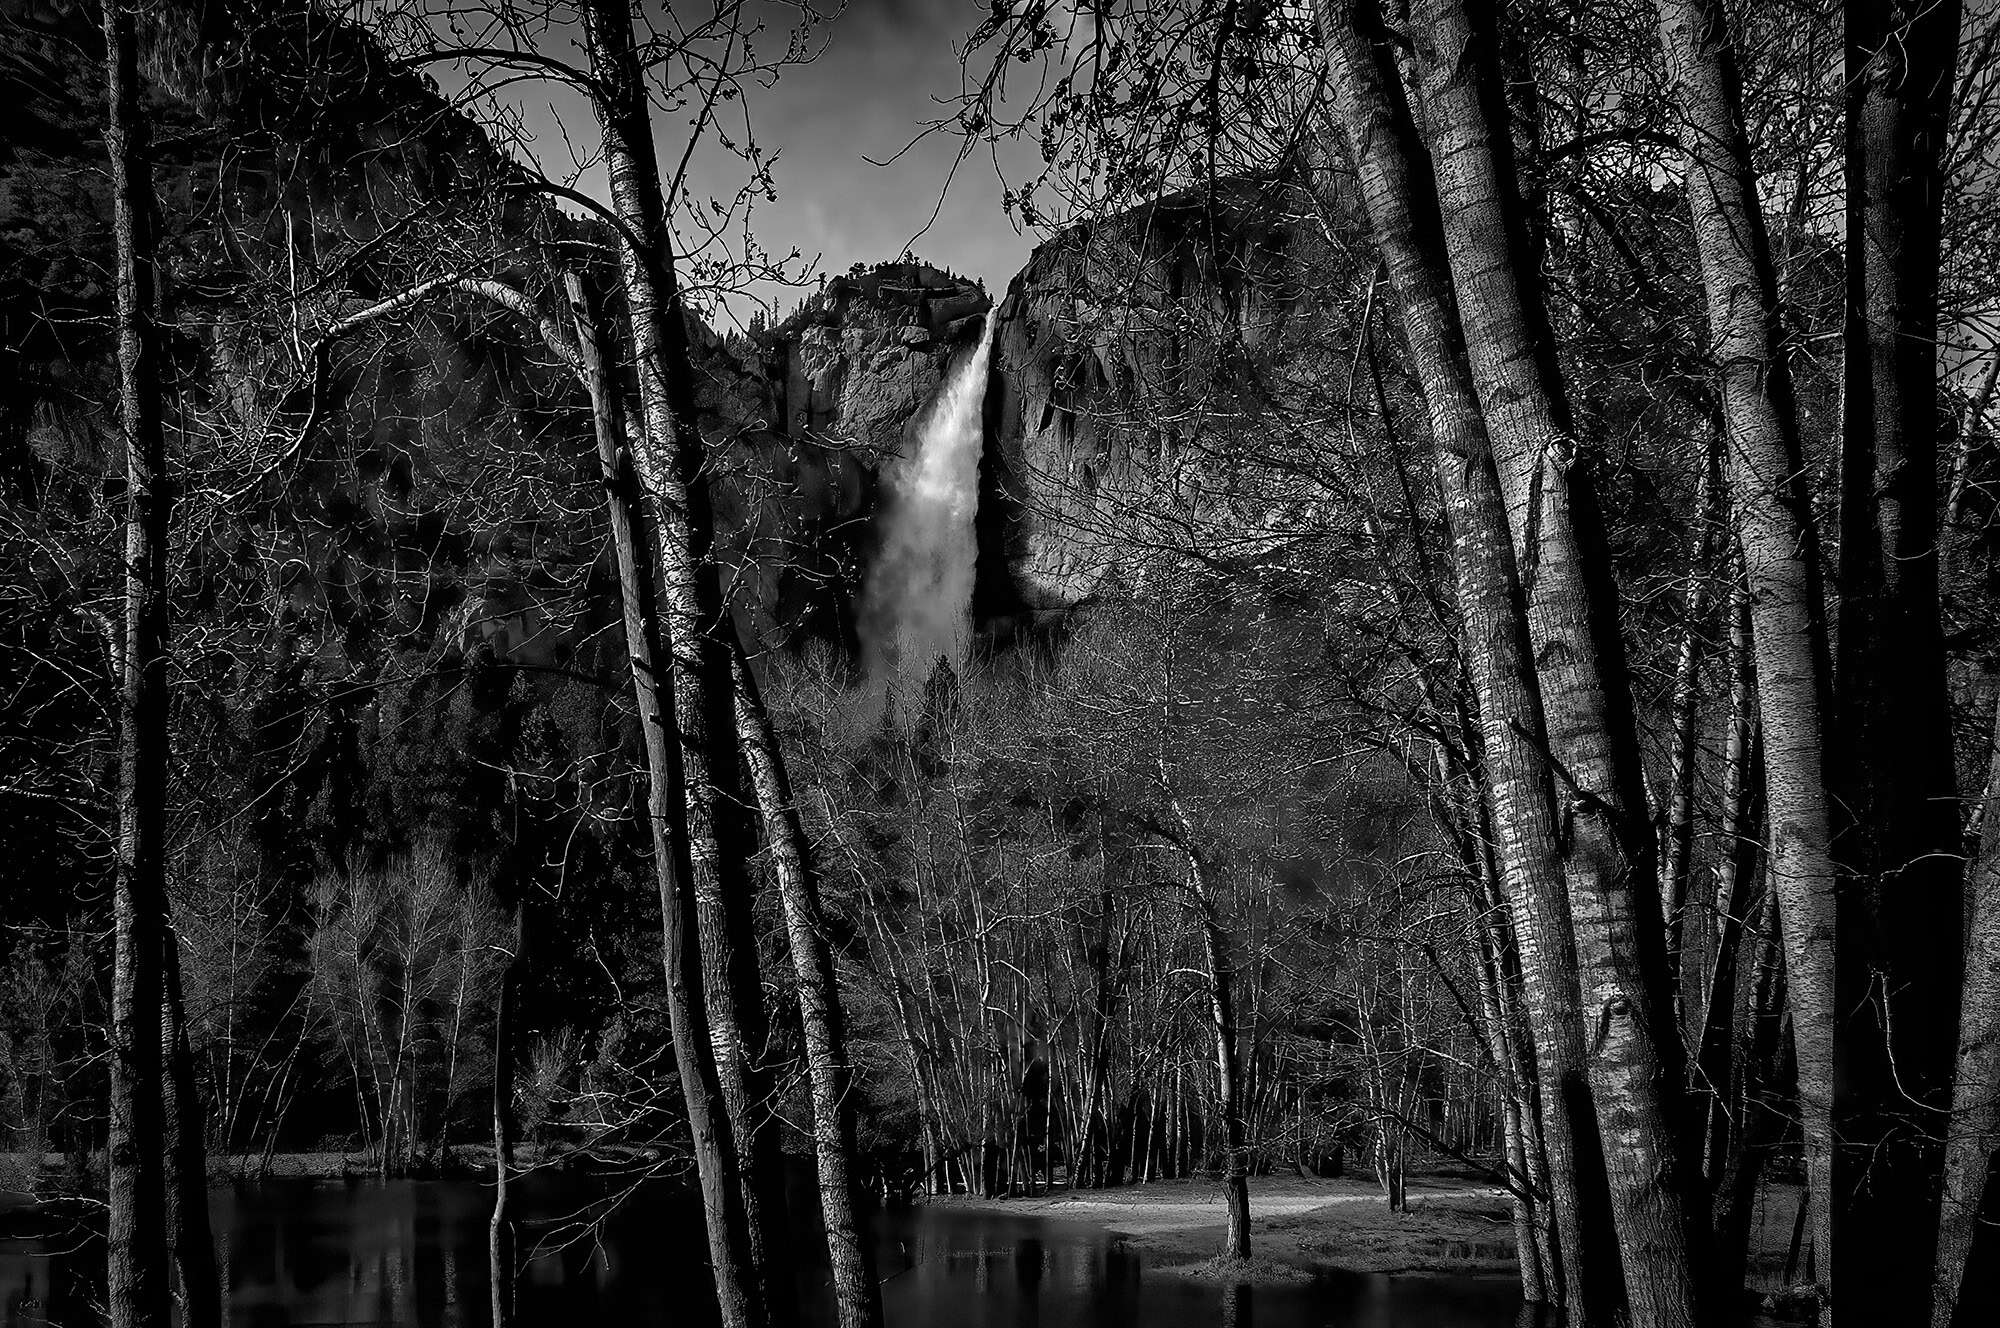 Upper Yosemite Falls framed thru trees.